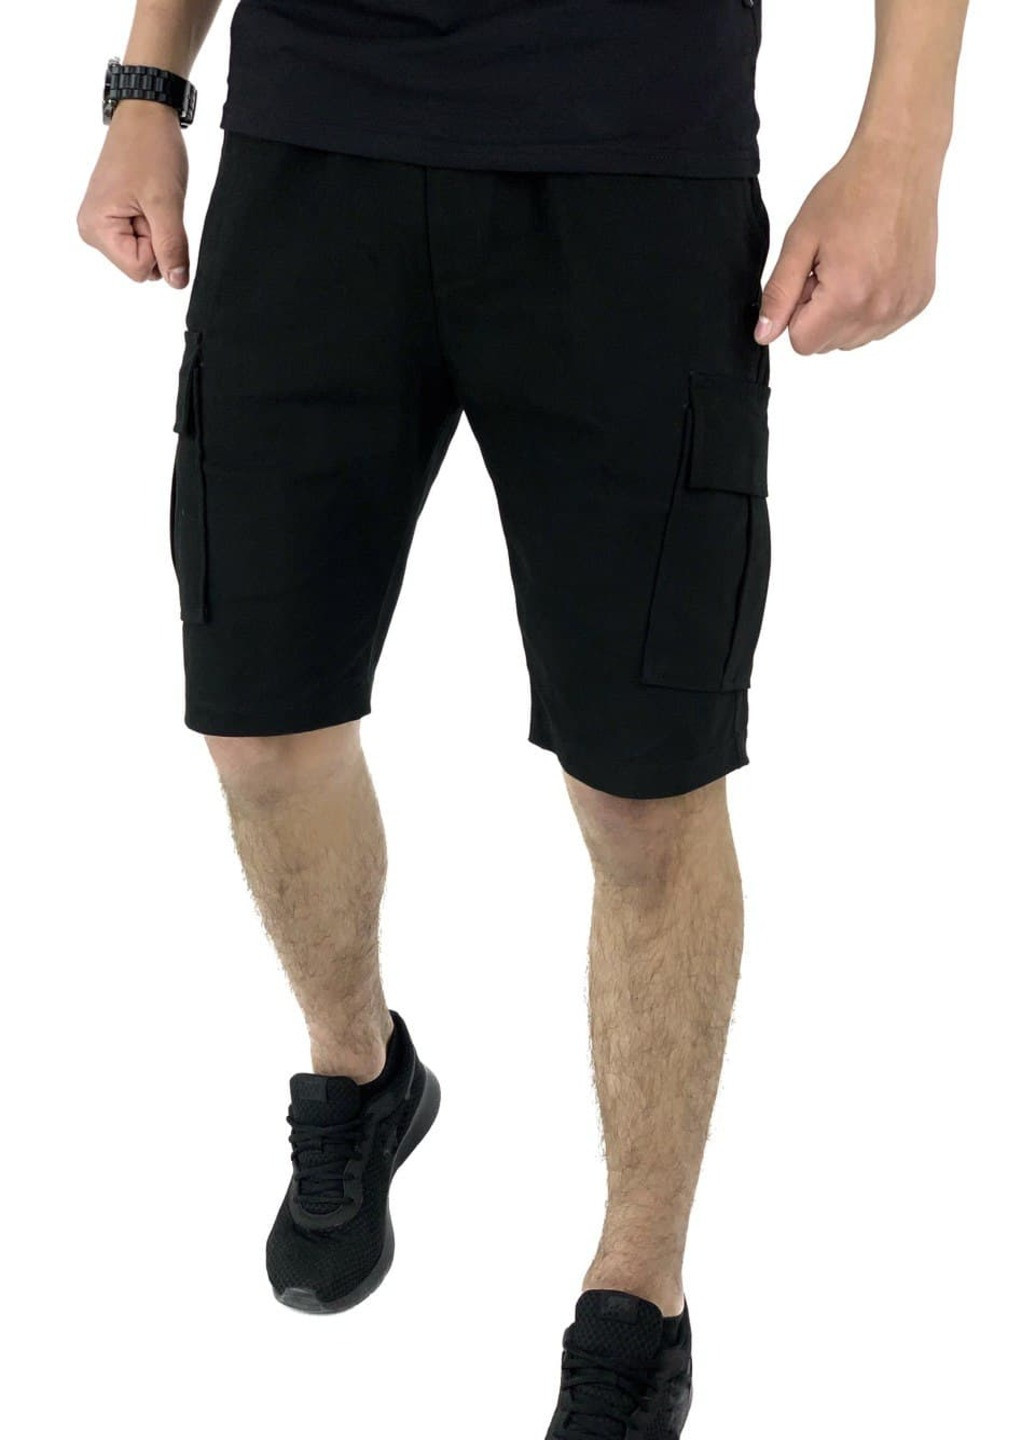 Комбинированный летний костюм летний мужской (футболка "color stripe" серая - хаки + шорты miami черные) Intruder